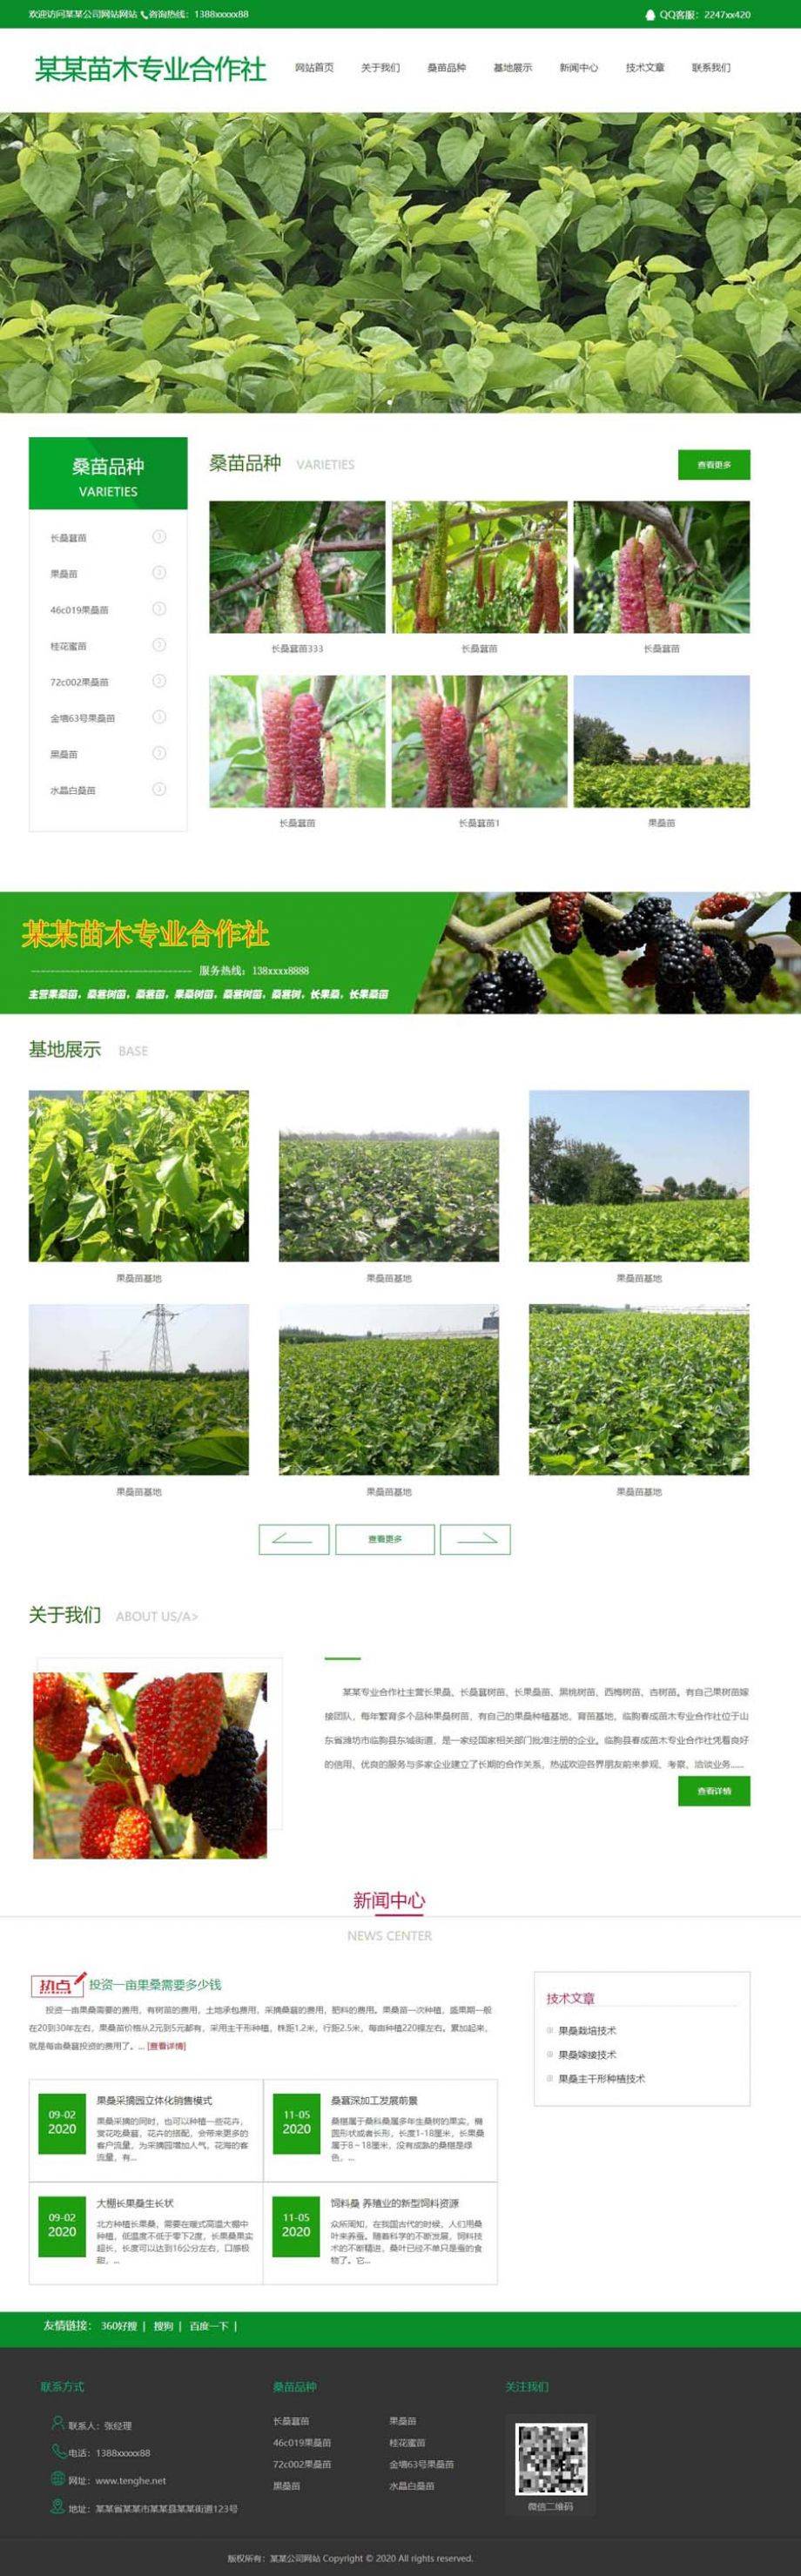 绿色植物合作社网站及管理系统